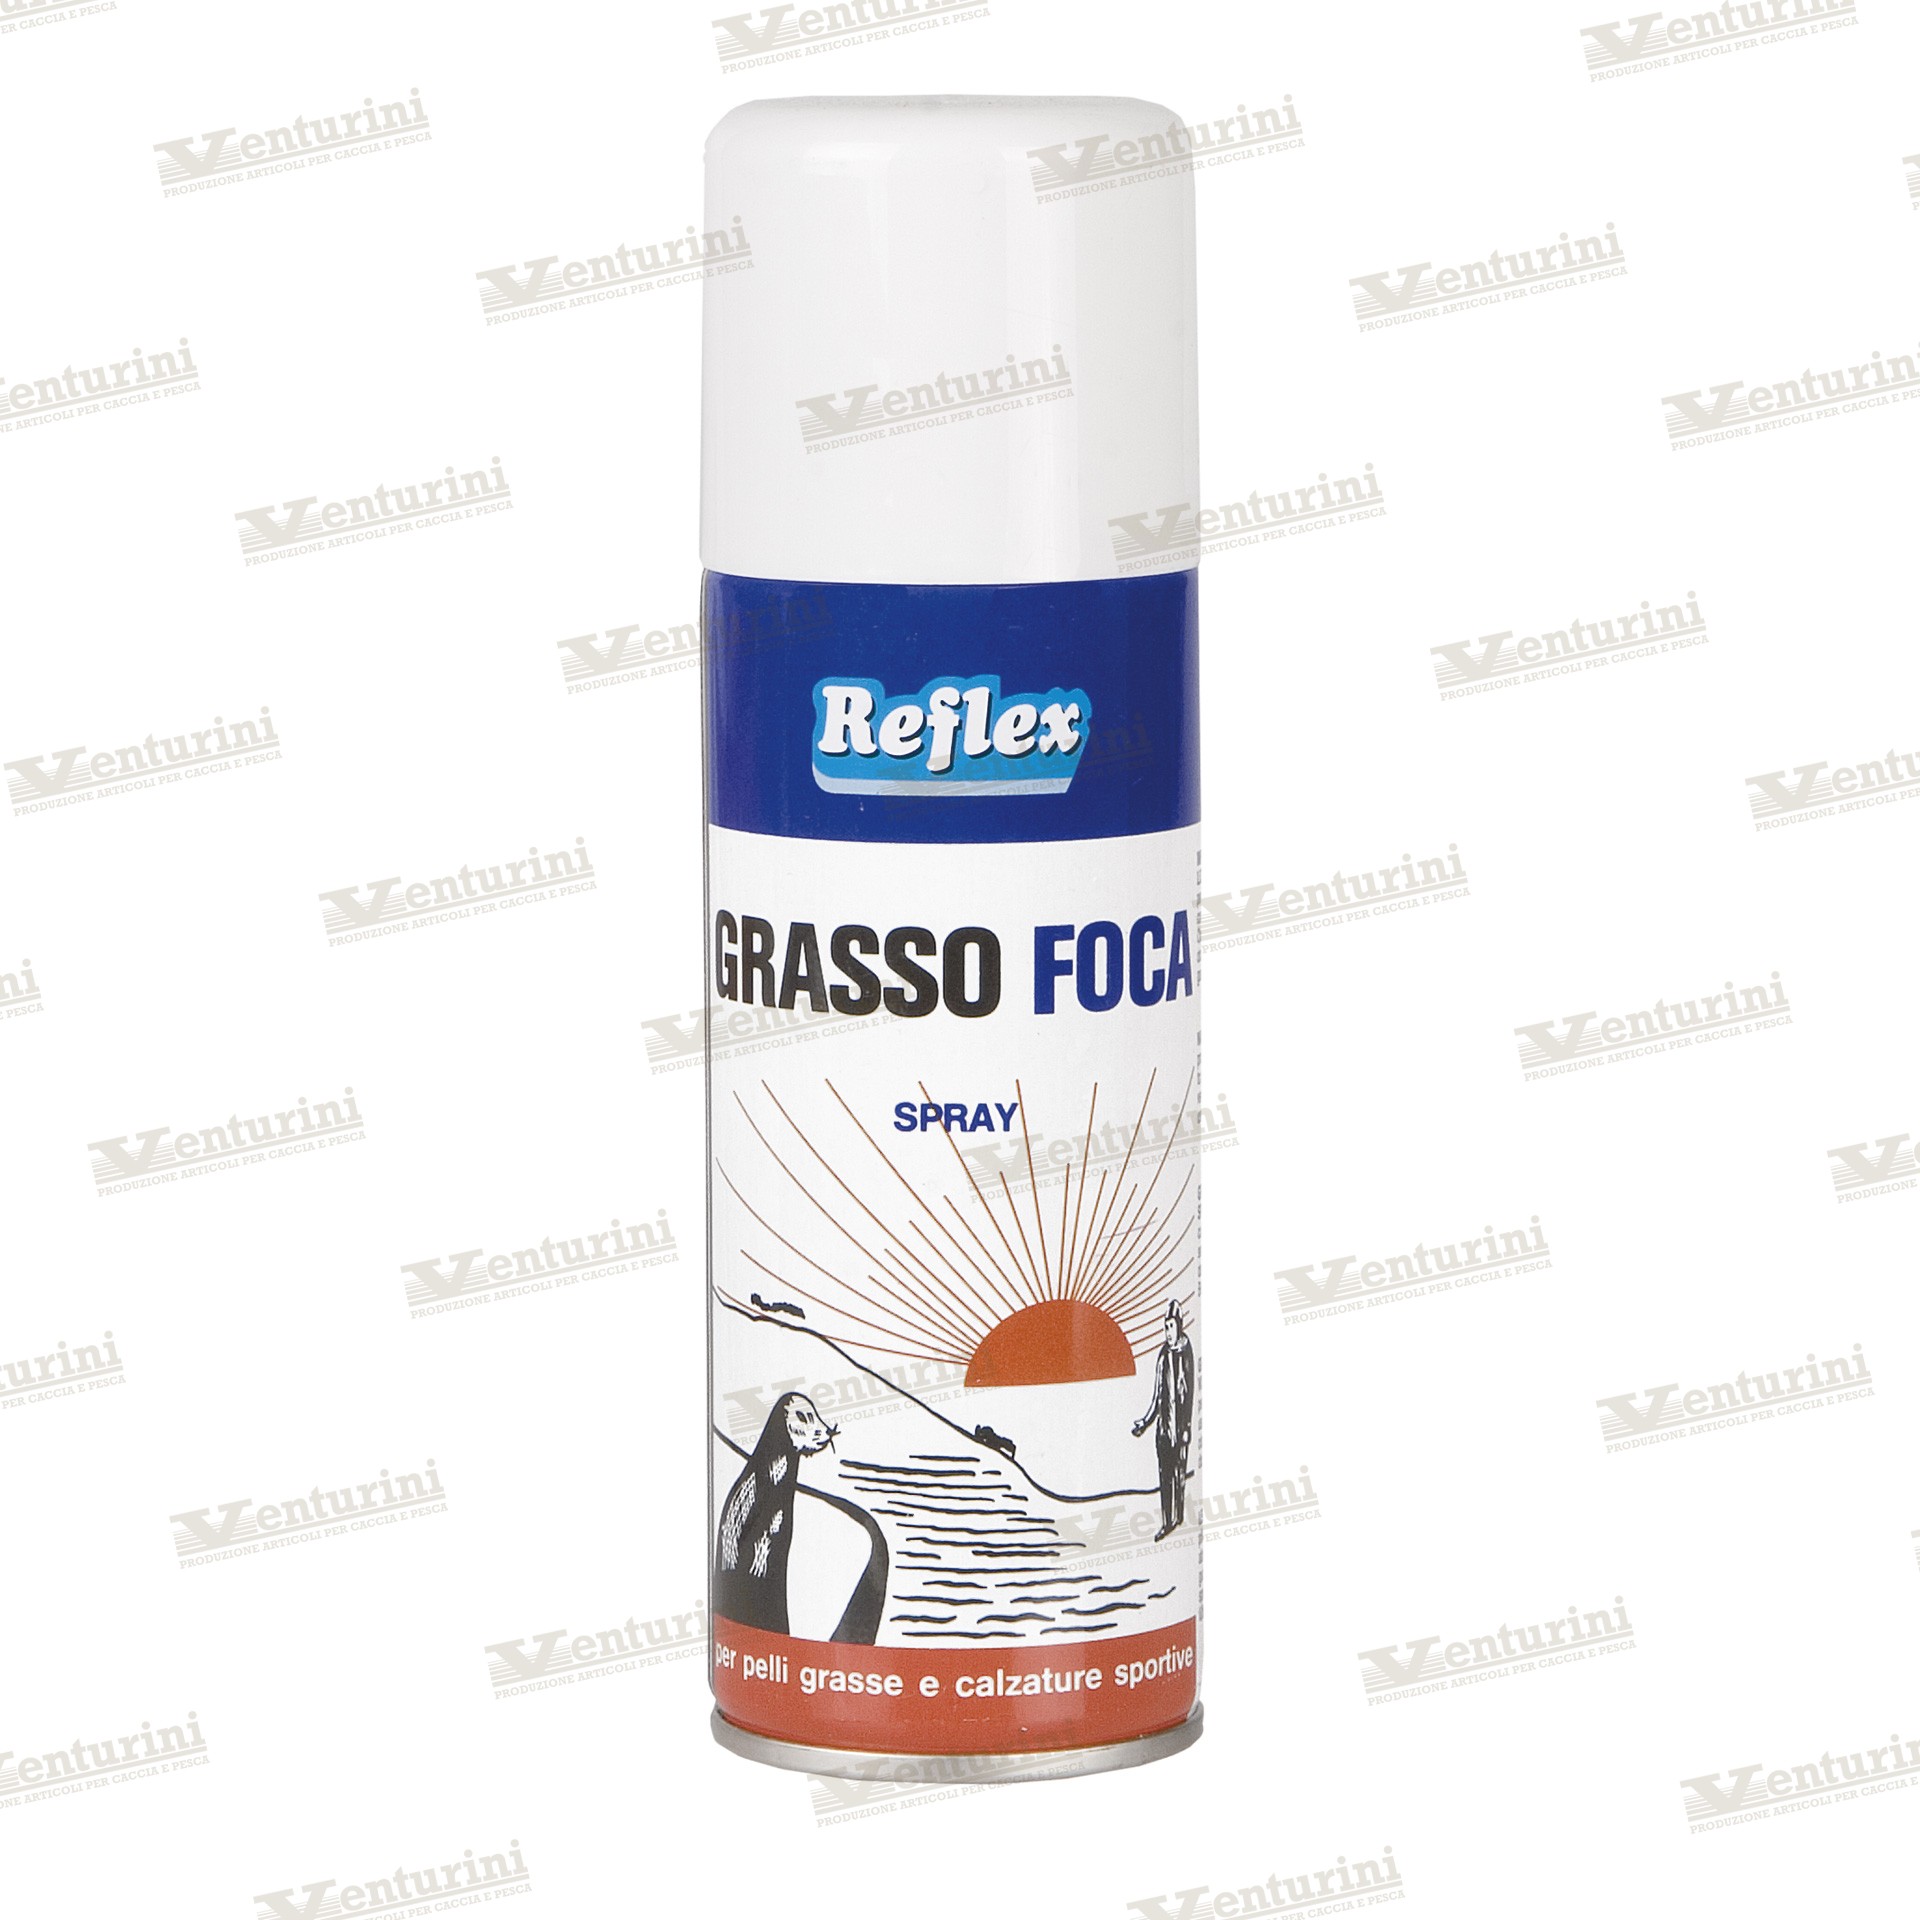 Reflex Grasso Foca Tradizionale Spray 200 ml - Venturini Shop